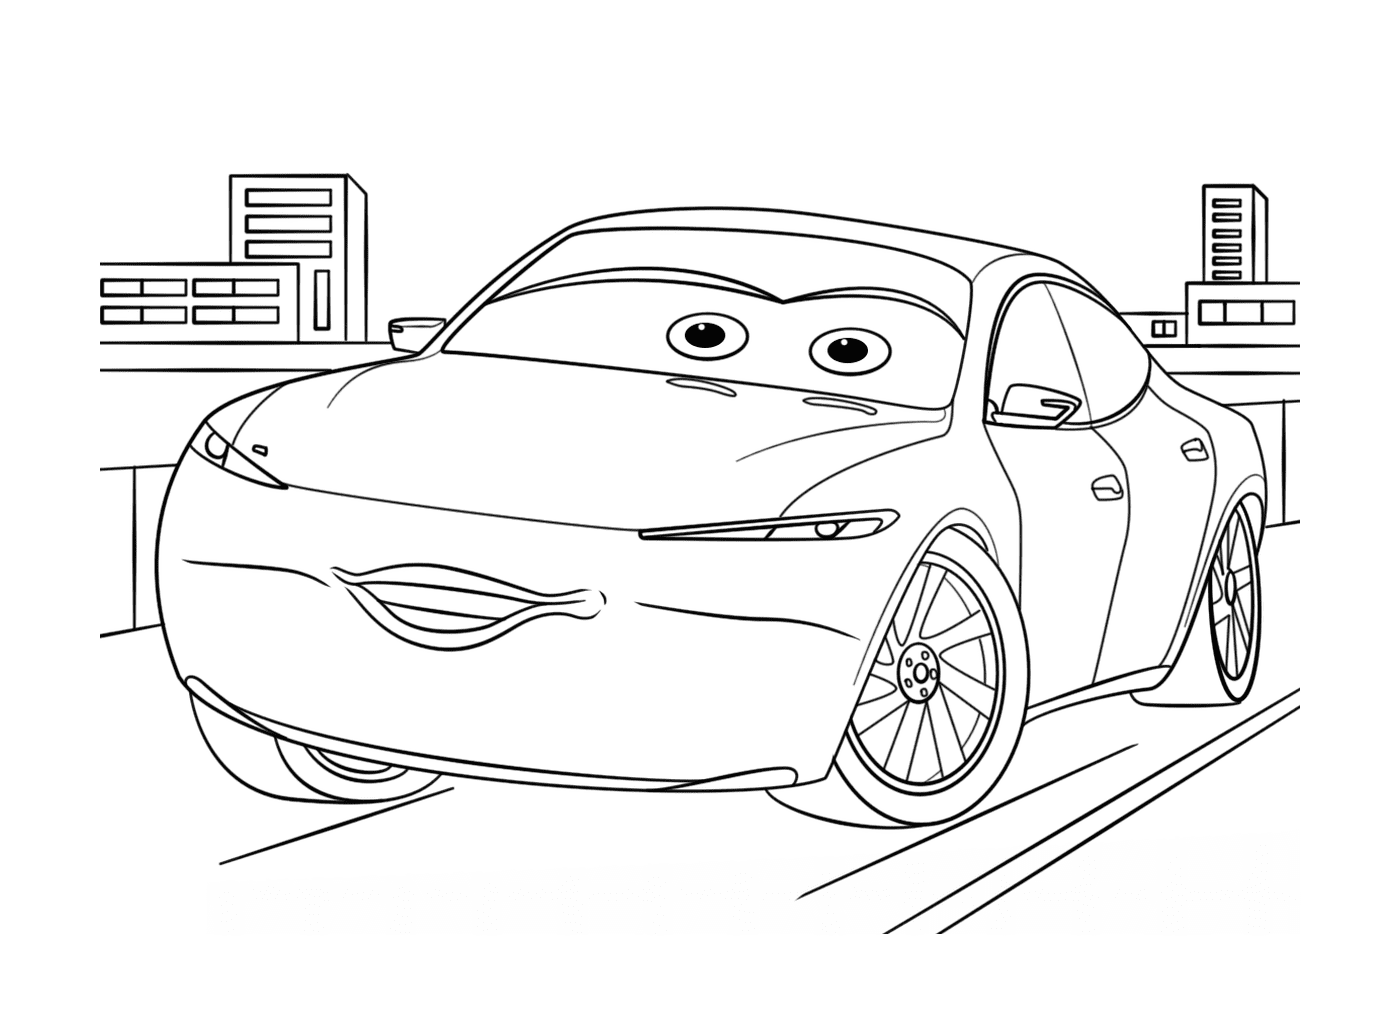   Une voiture avec des yeux dessinés dessus 